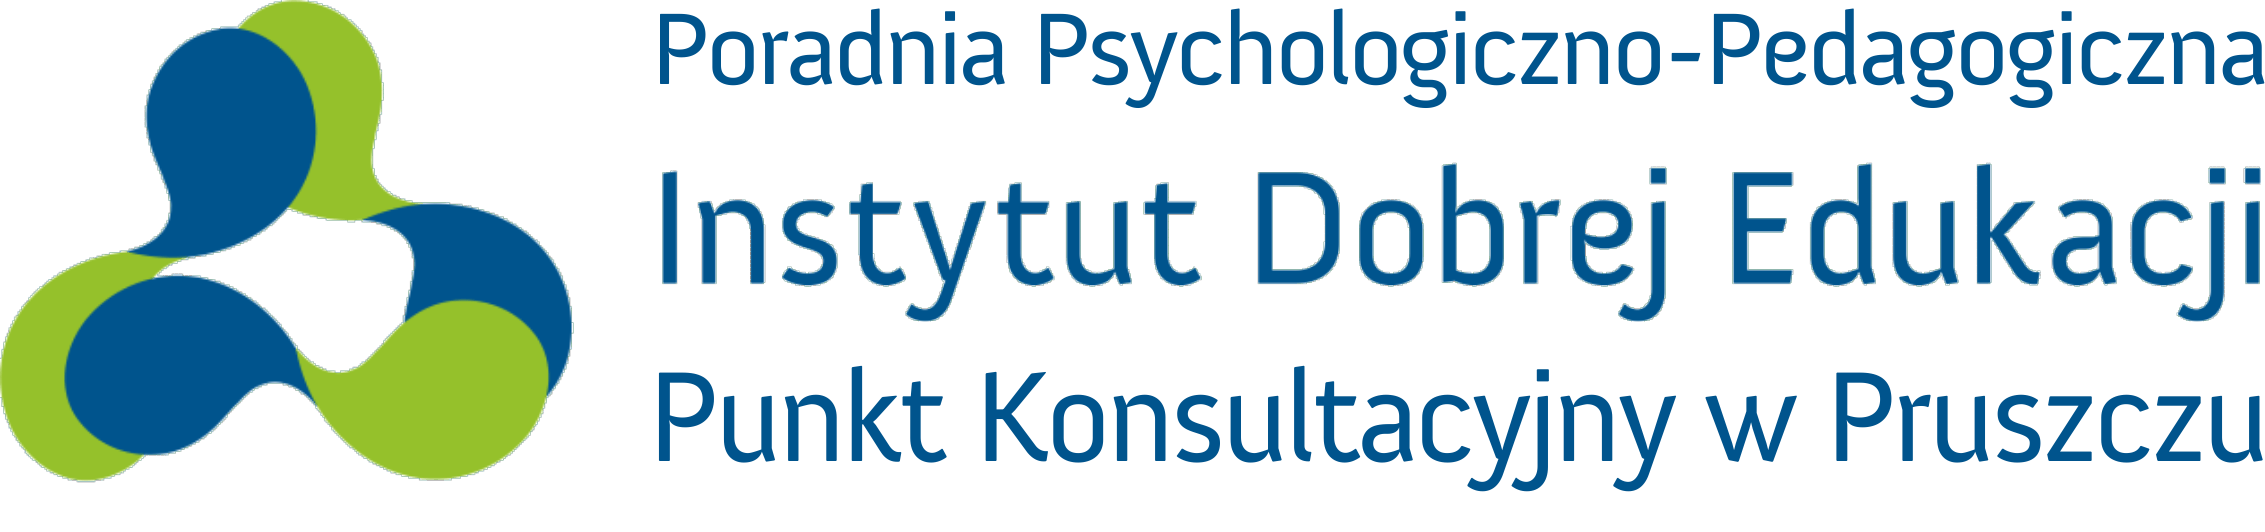 Poradnia Psychologiczno-Pedagogiczna Dobrej Edukacji w Pruszczu Gdańskim